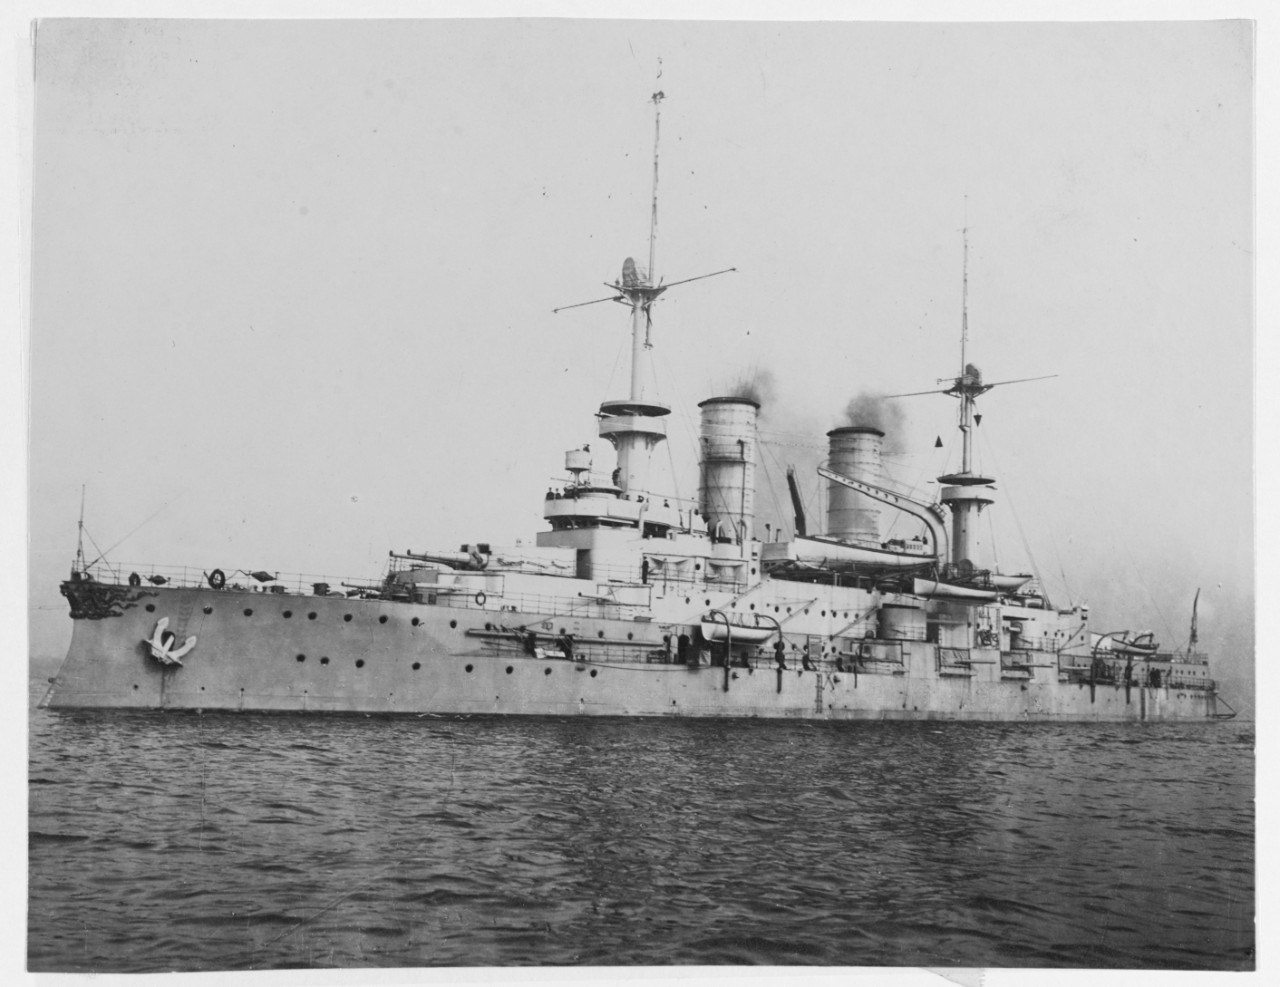 WITTELSBACH (German Battleship, 1900-1921)